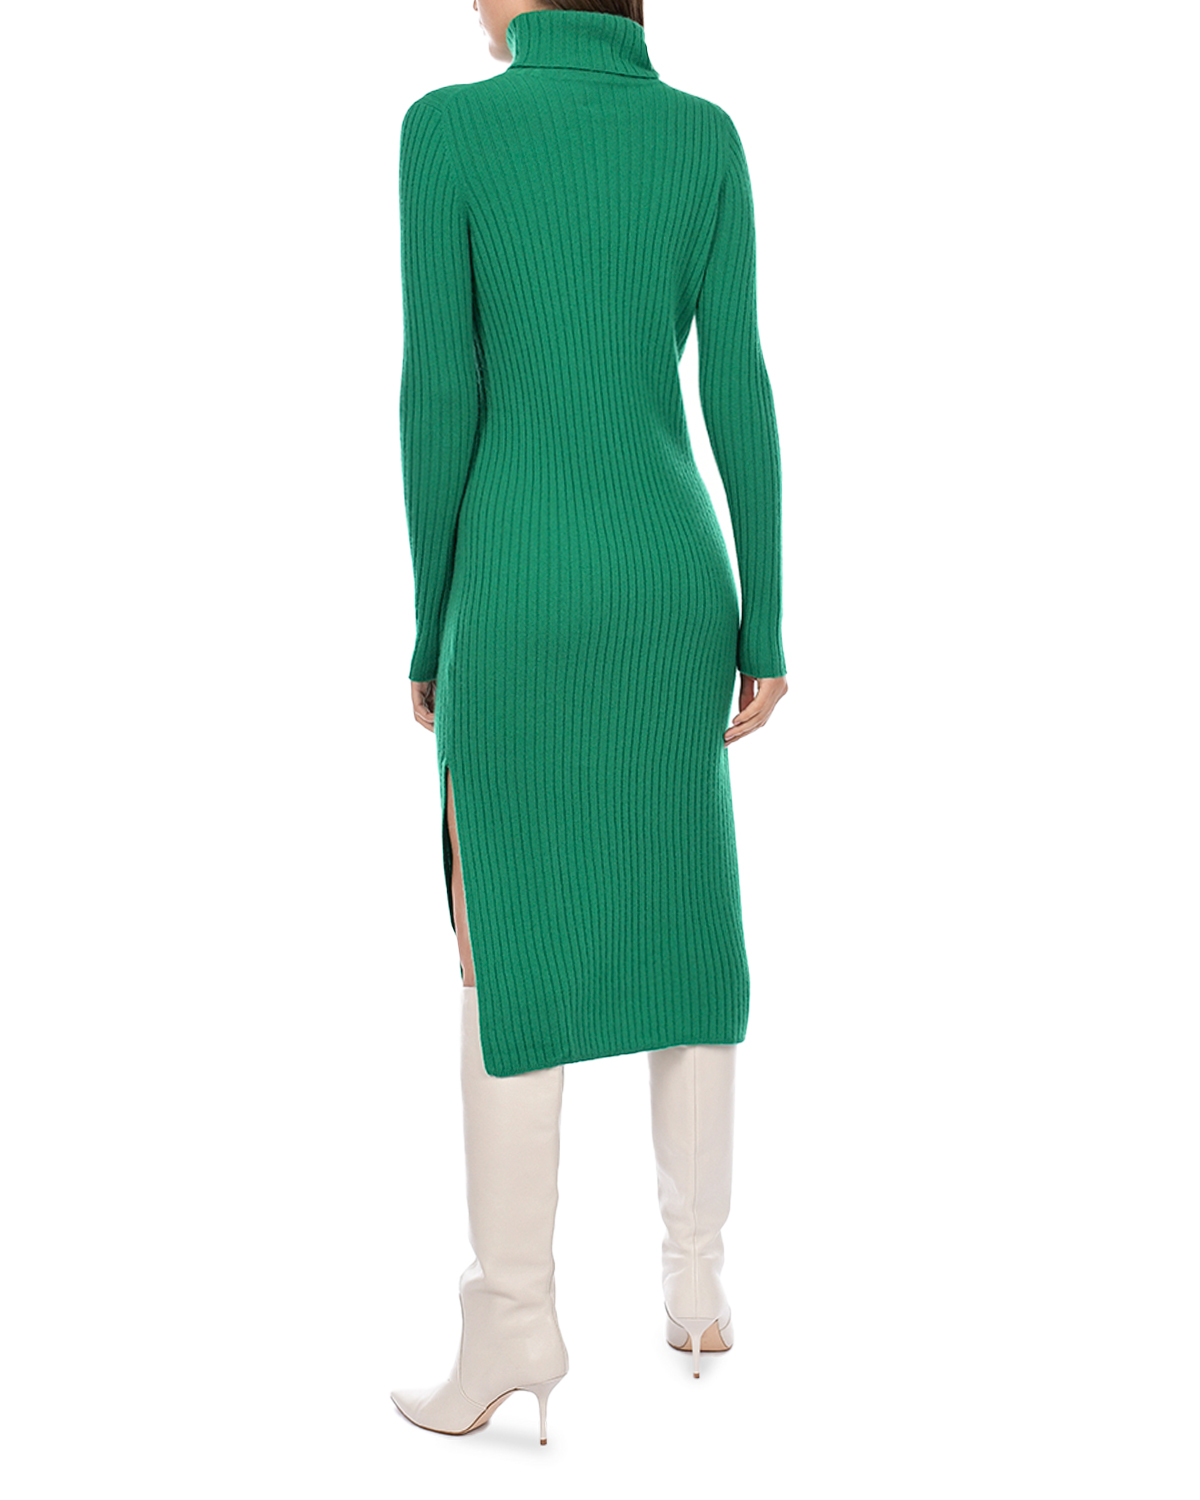 Платье из кашемира зеленого цвета Allude, размер 38 - фото 4